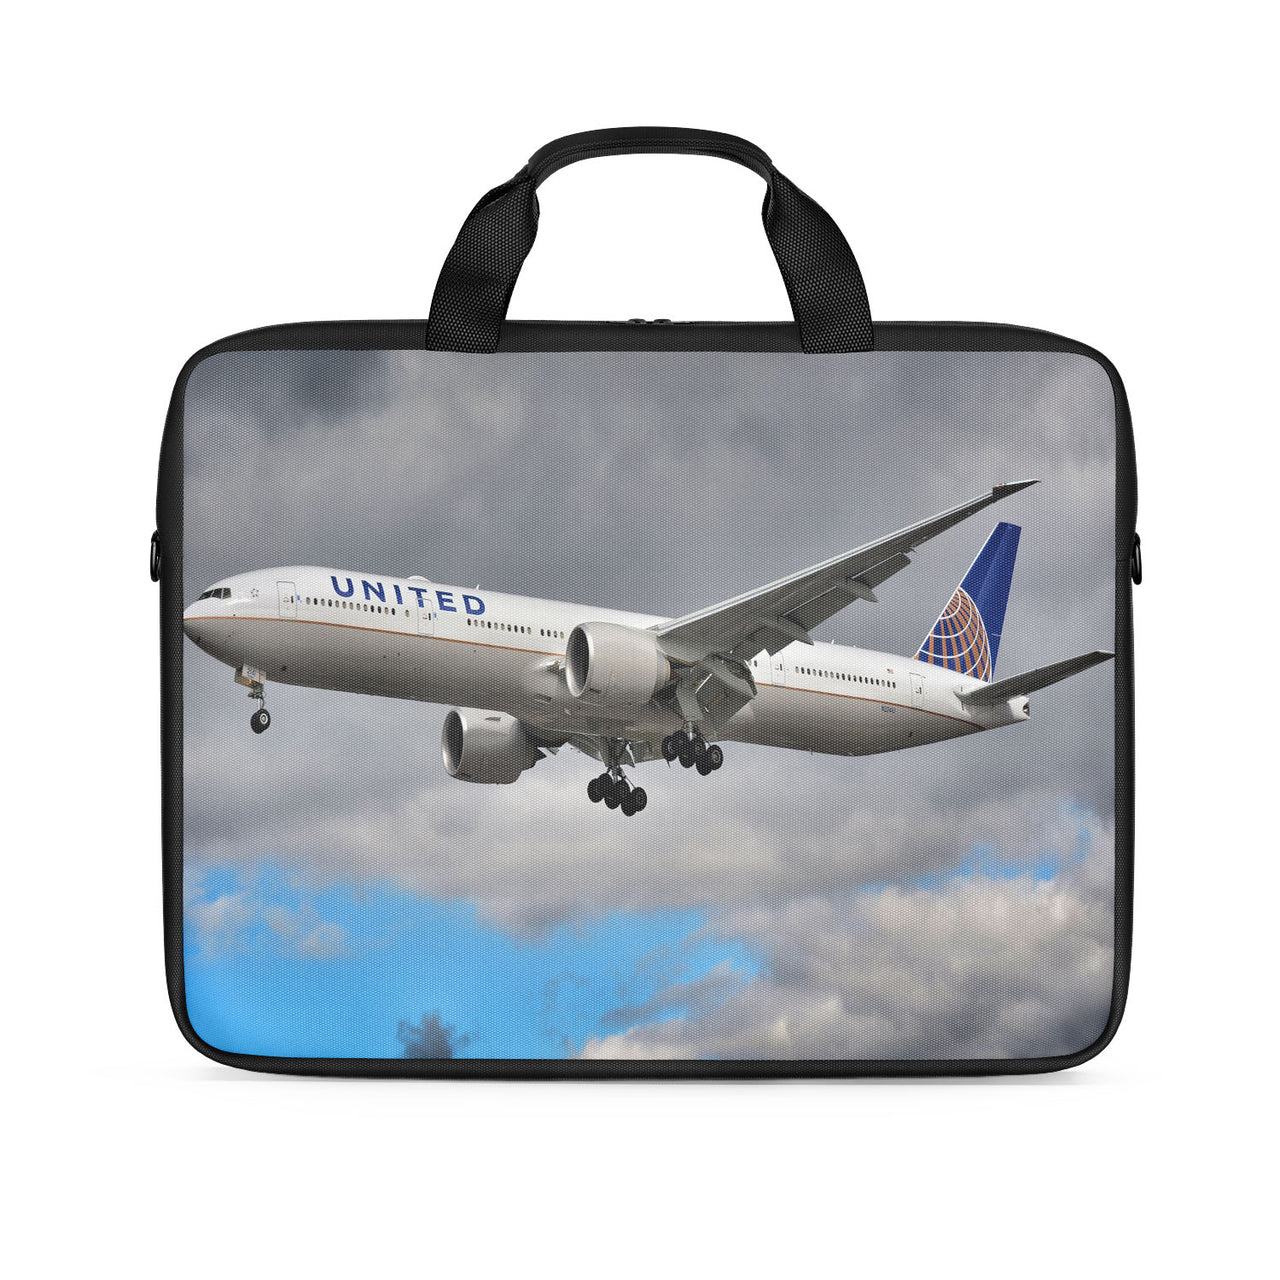 United Airways Boeing 777 Designed Laptop & Tablet Bags